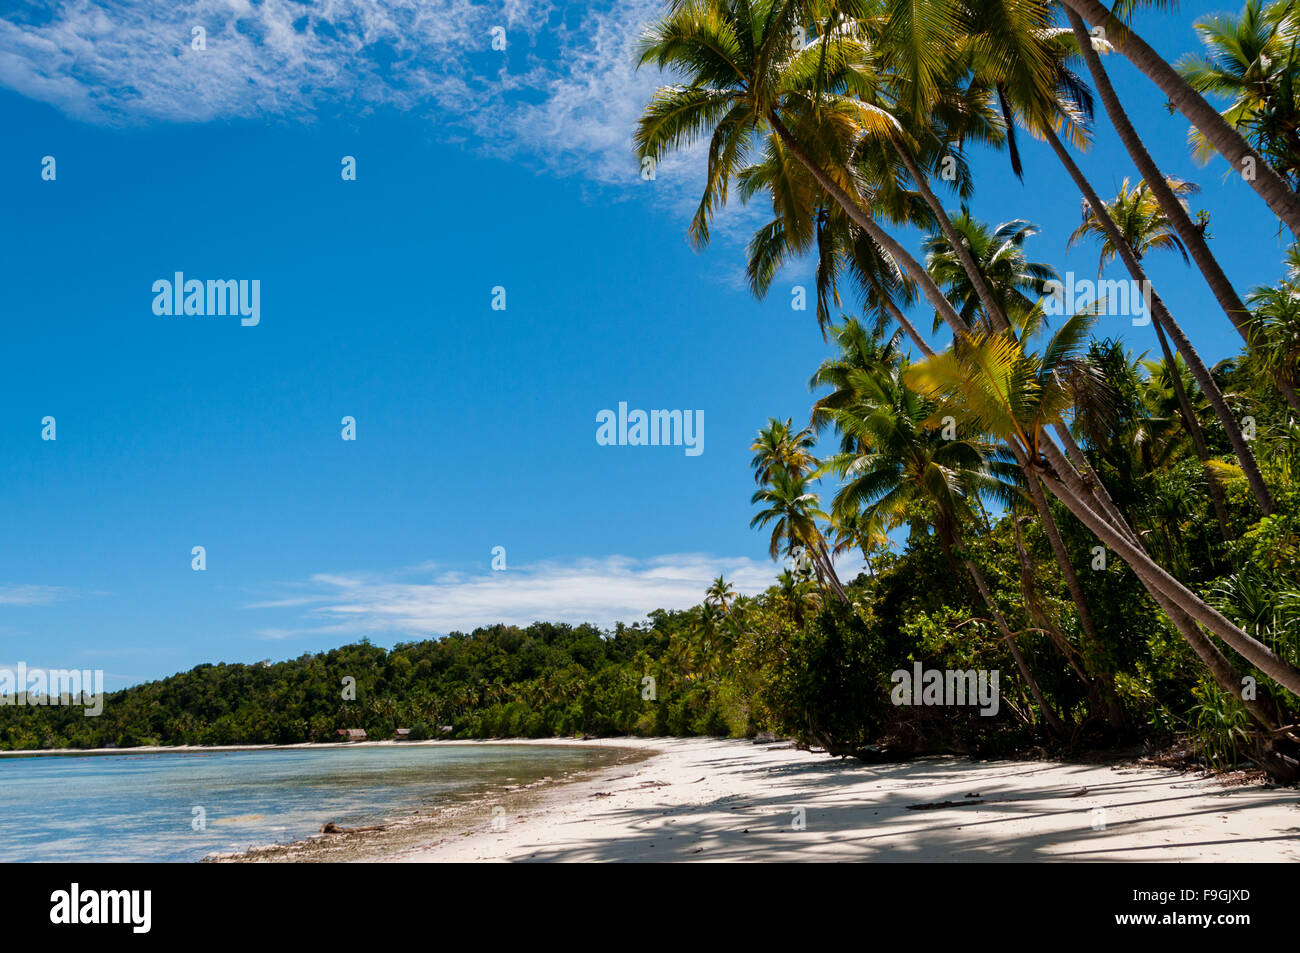 Palmen an einem tropischen Raja Ampat Strand mit blauem Himmel und Meer Stockfoto